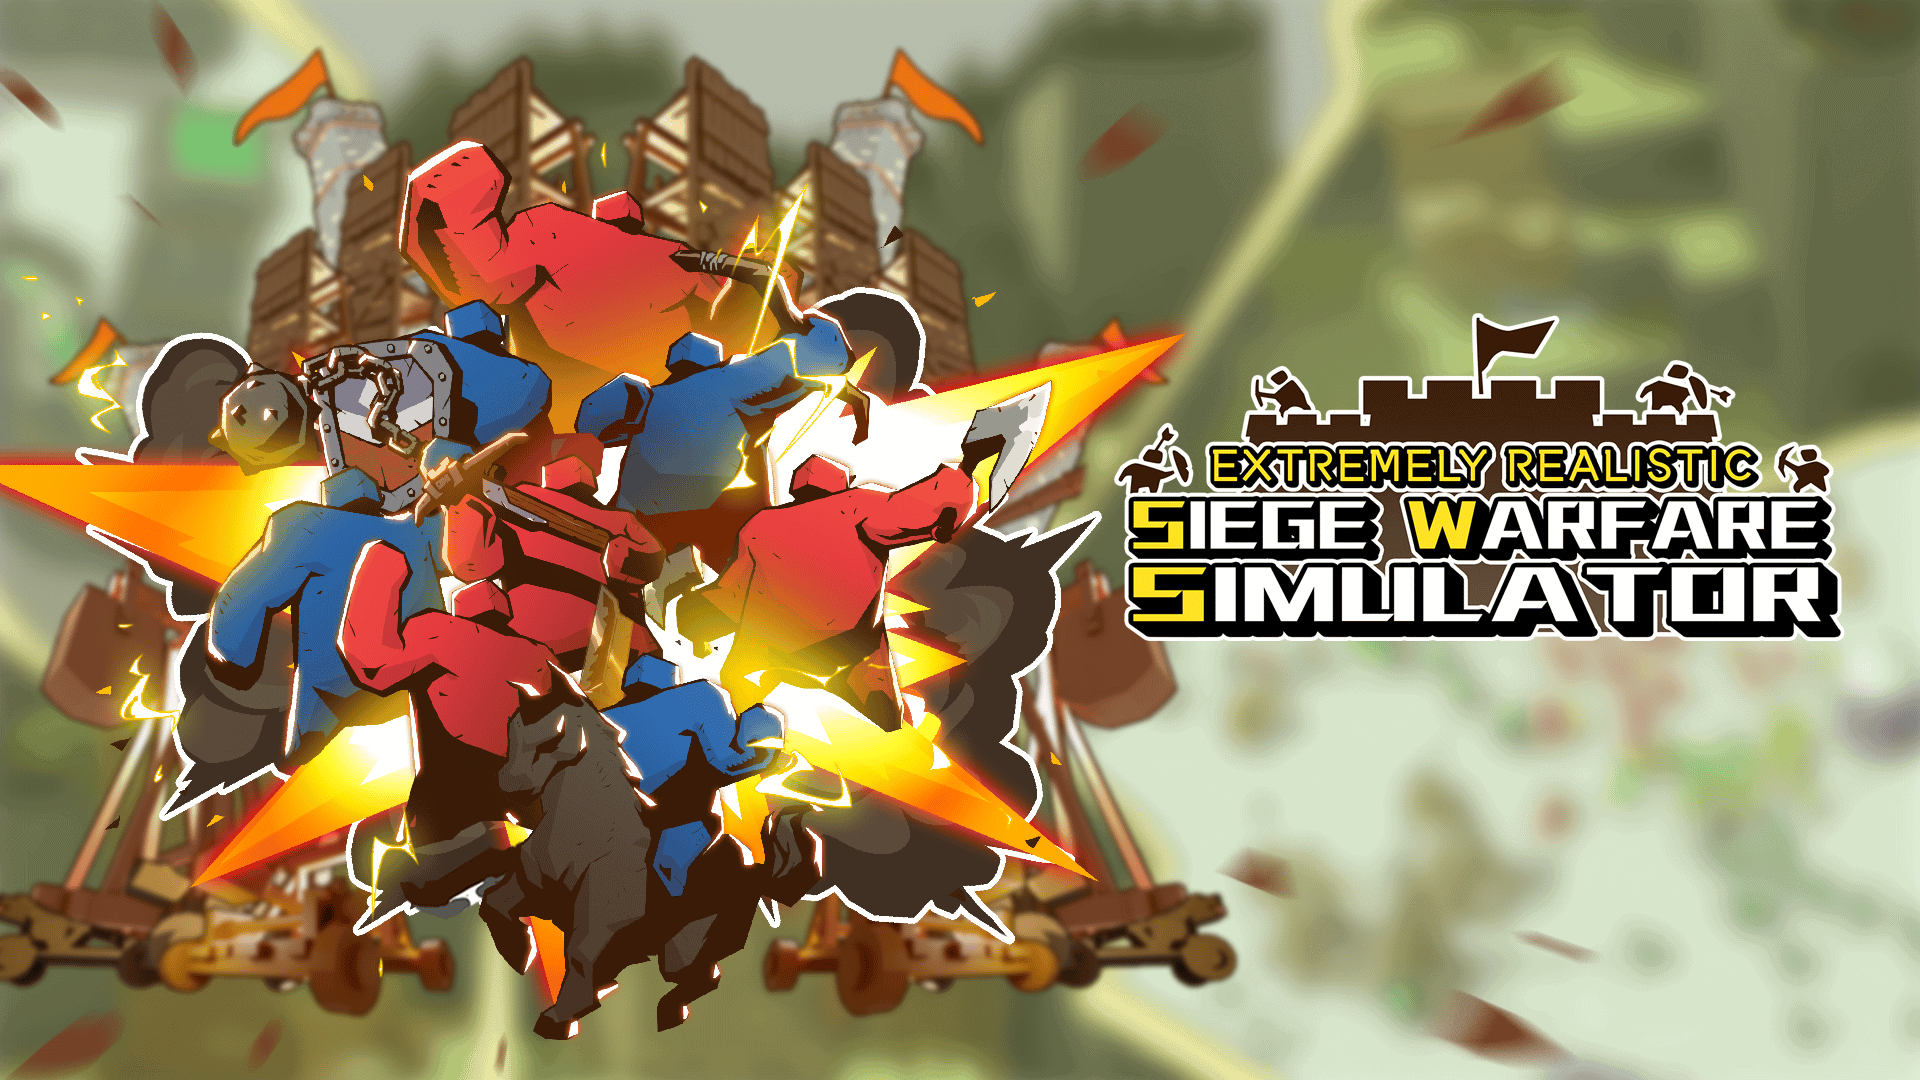 Siege Warfare Simulator adalah gim taktis yang sangat realistis yang akan hadir di Steam Early Access pada 8 September!